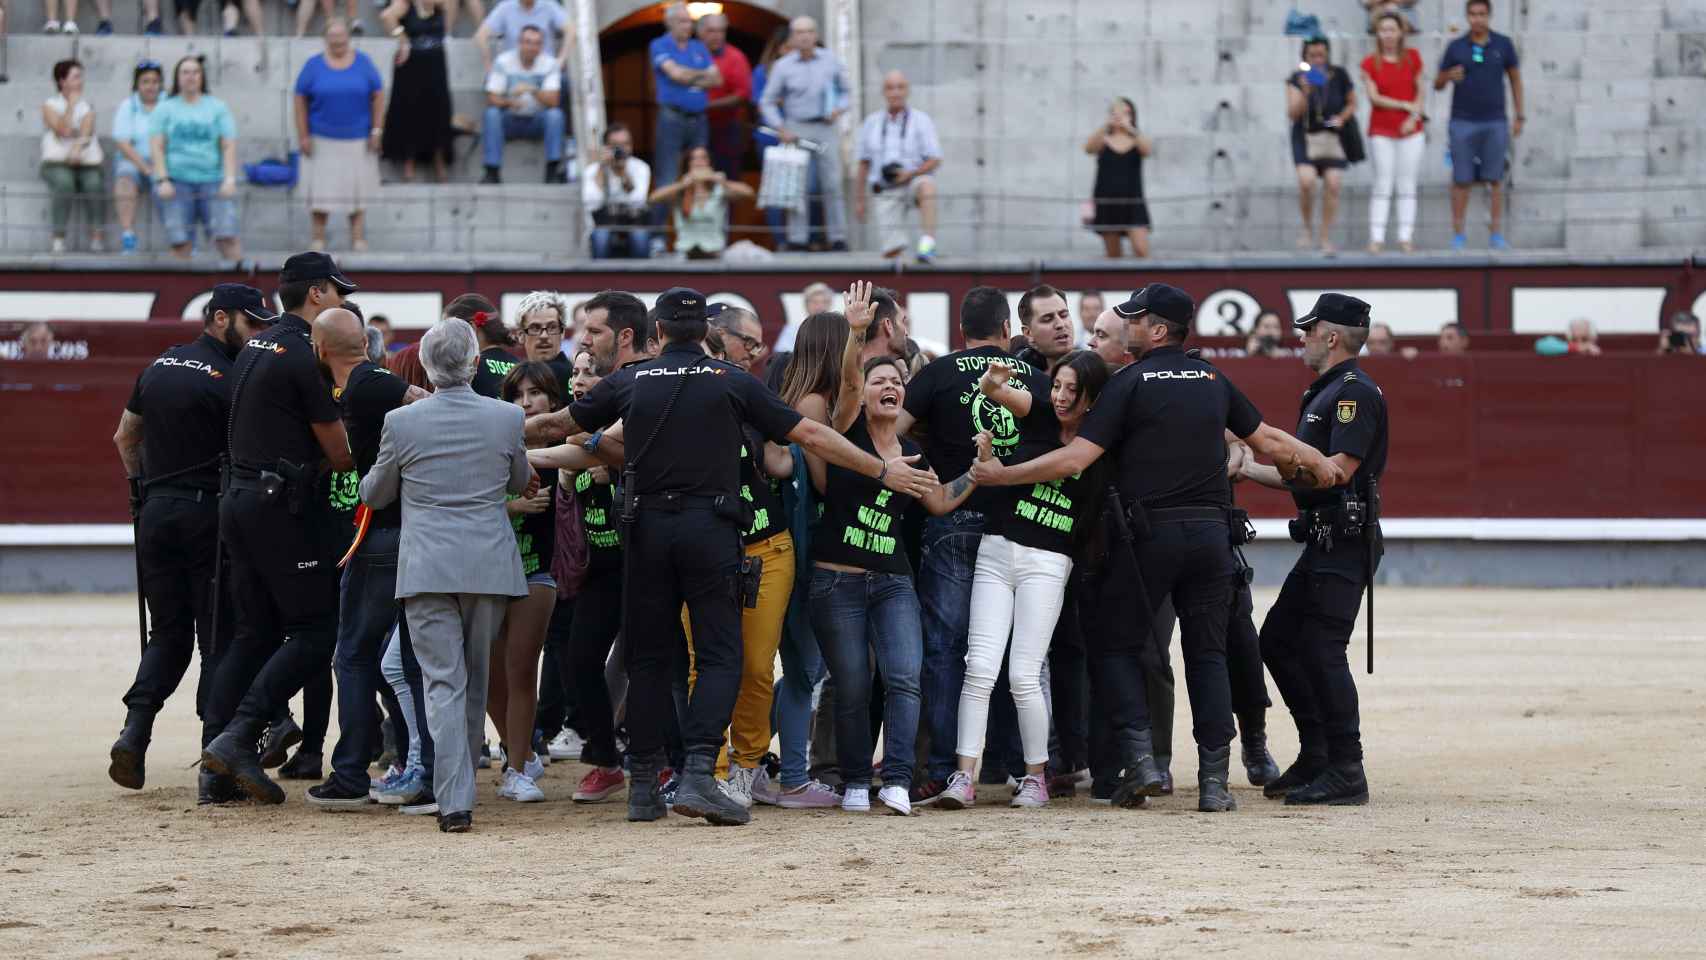 La Policía desaloja a los antitaurinos de Las Ventas